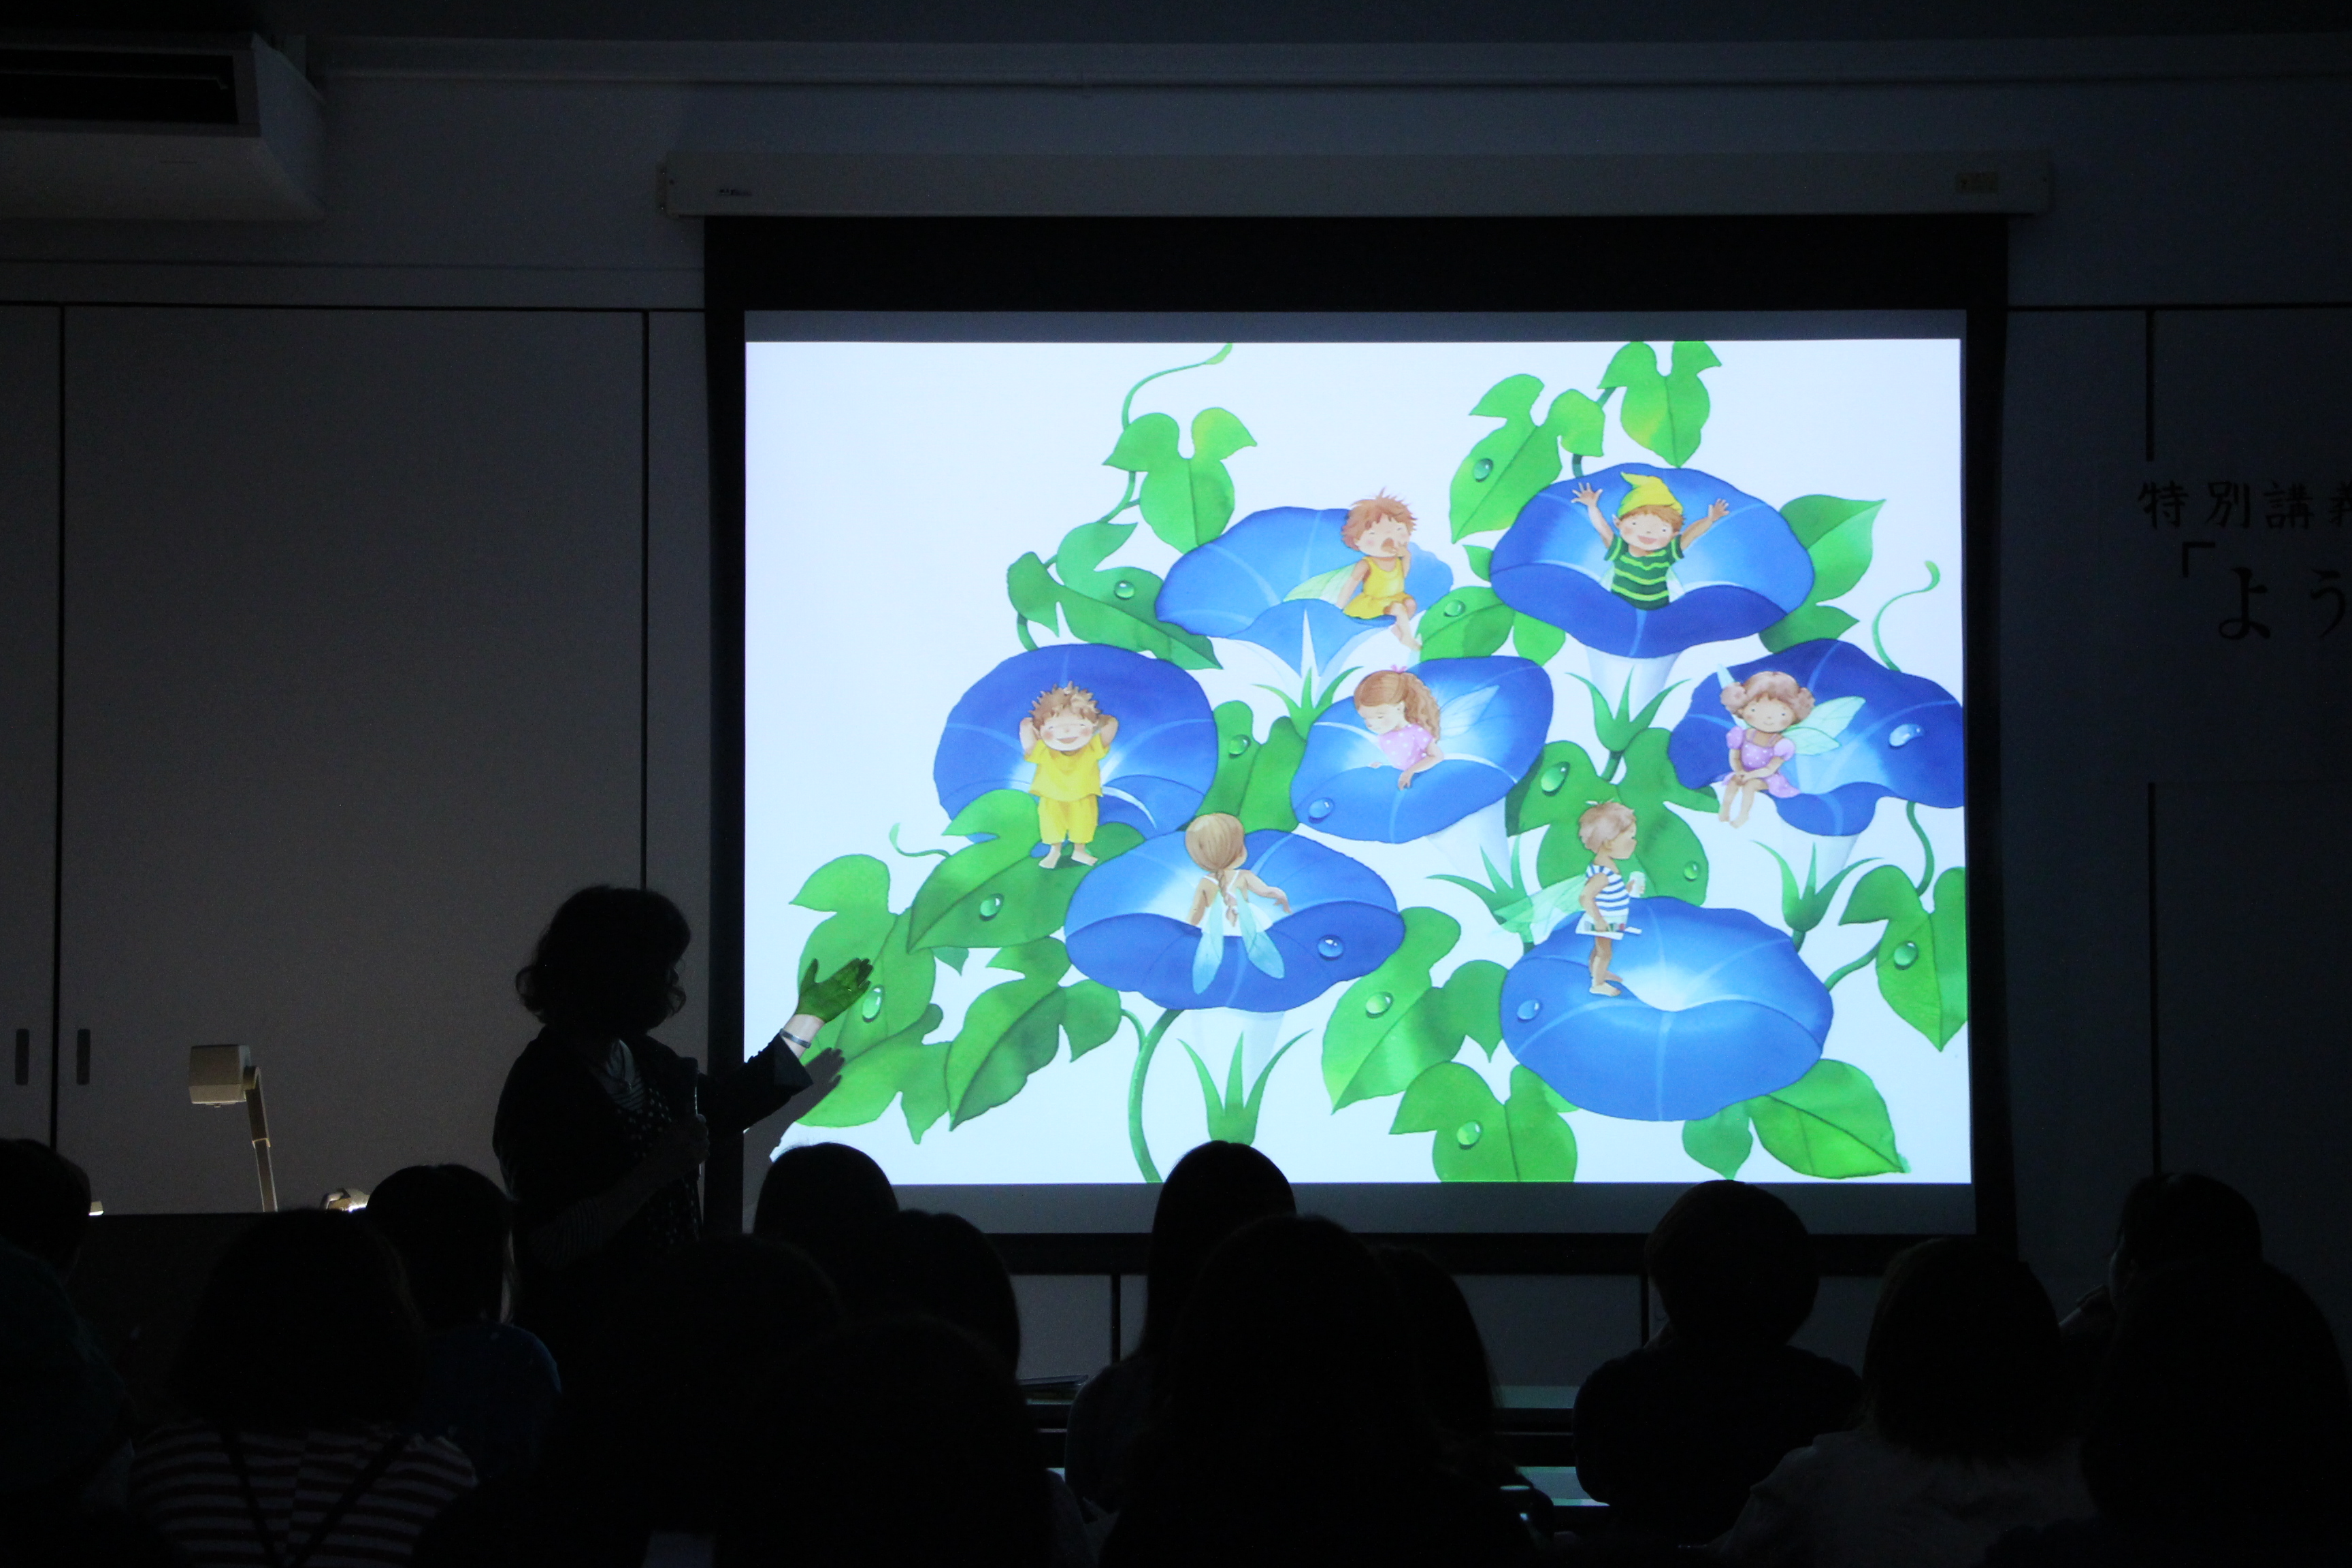 永田萠先生 特別講義 ようこそ絵本の世界へ イベント こども芸術学科 Kua Blog